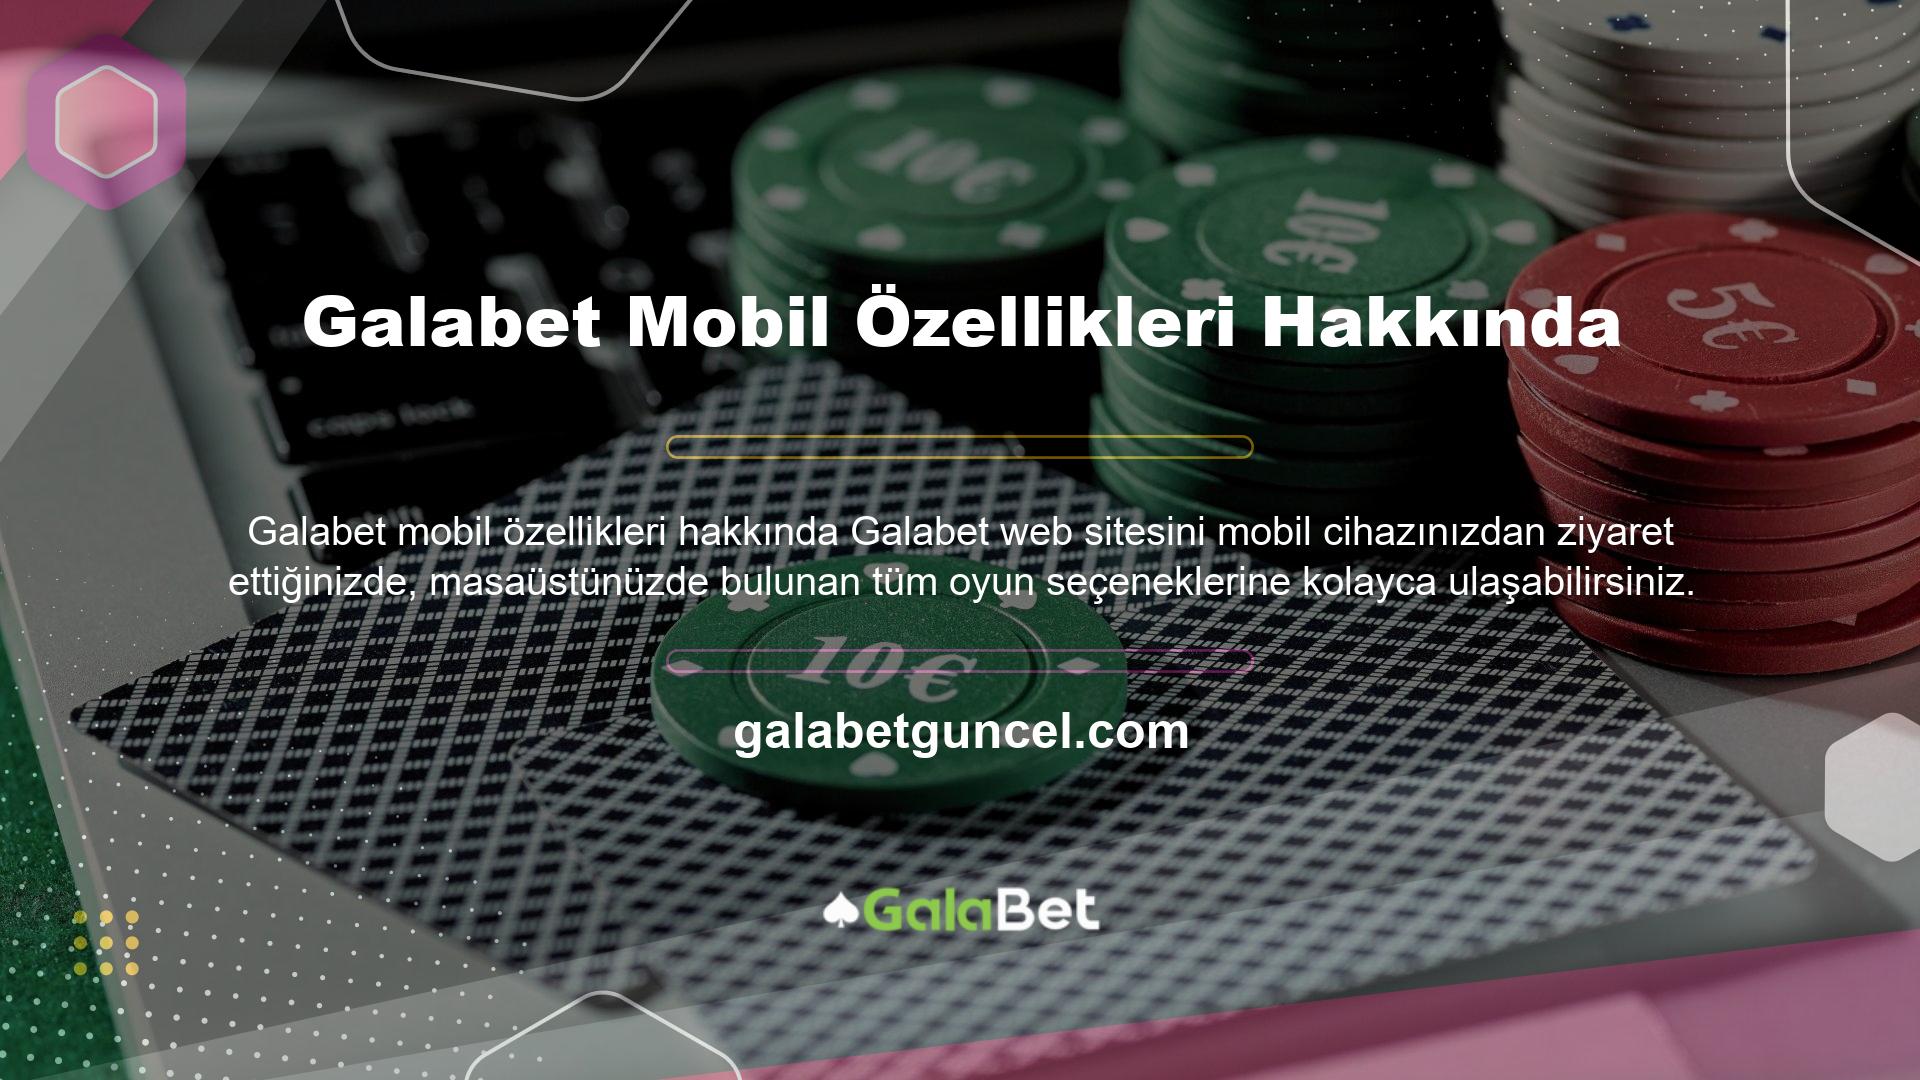 Abonelik programı, Galabet mobil yetenekleri sayesinde mobil versiyonla aynı oyun deneyimini sunar